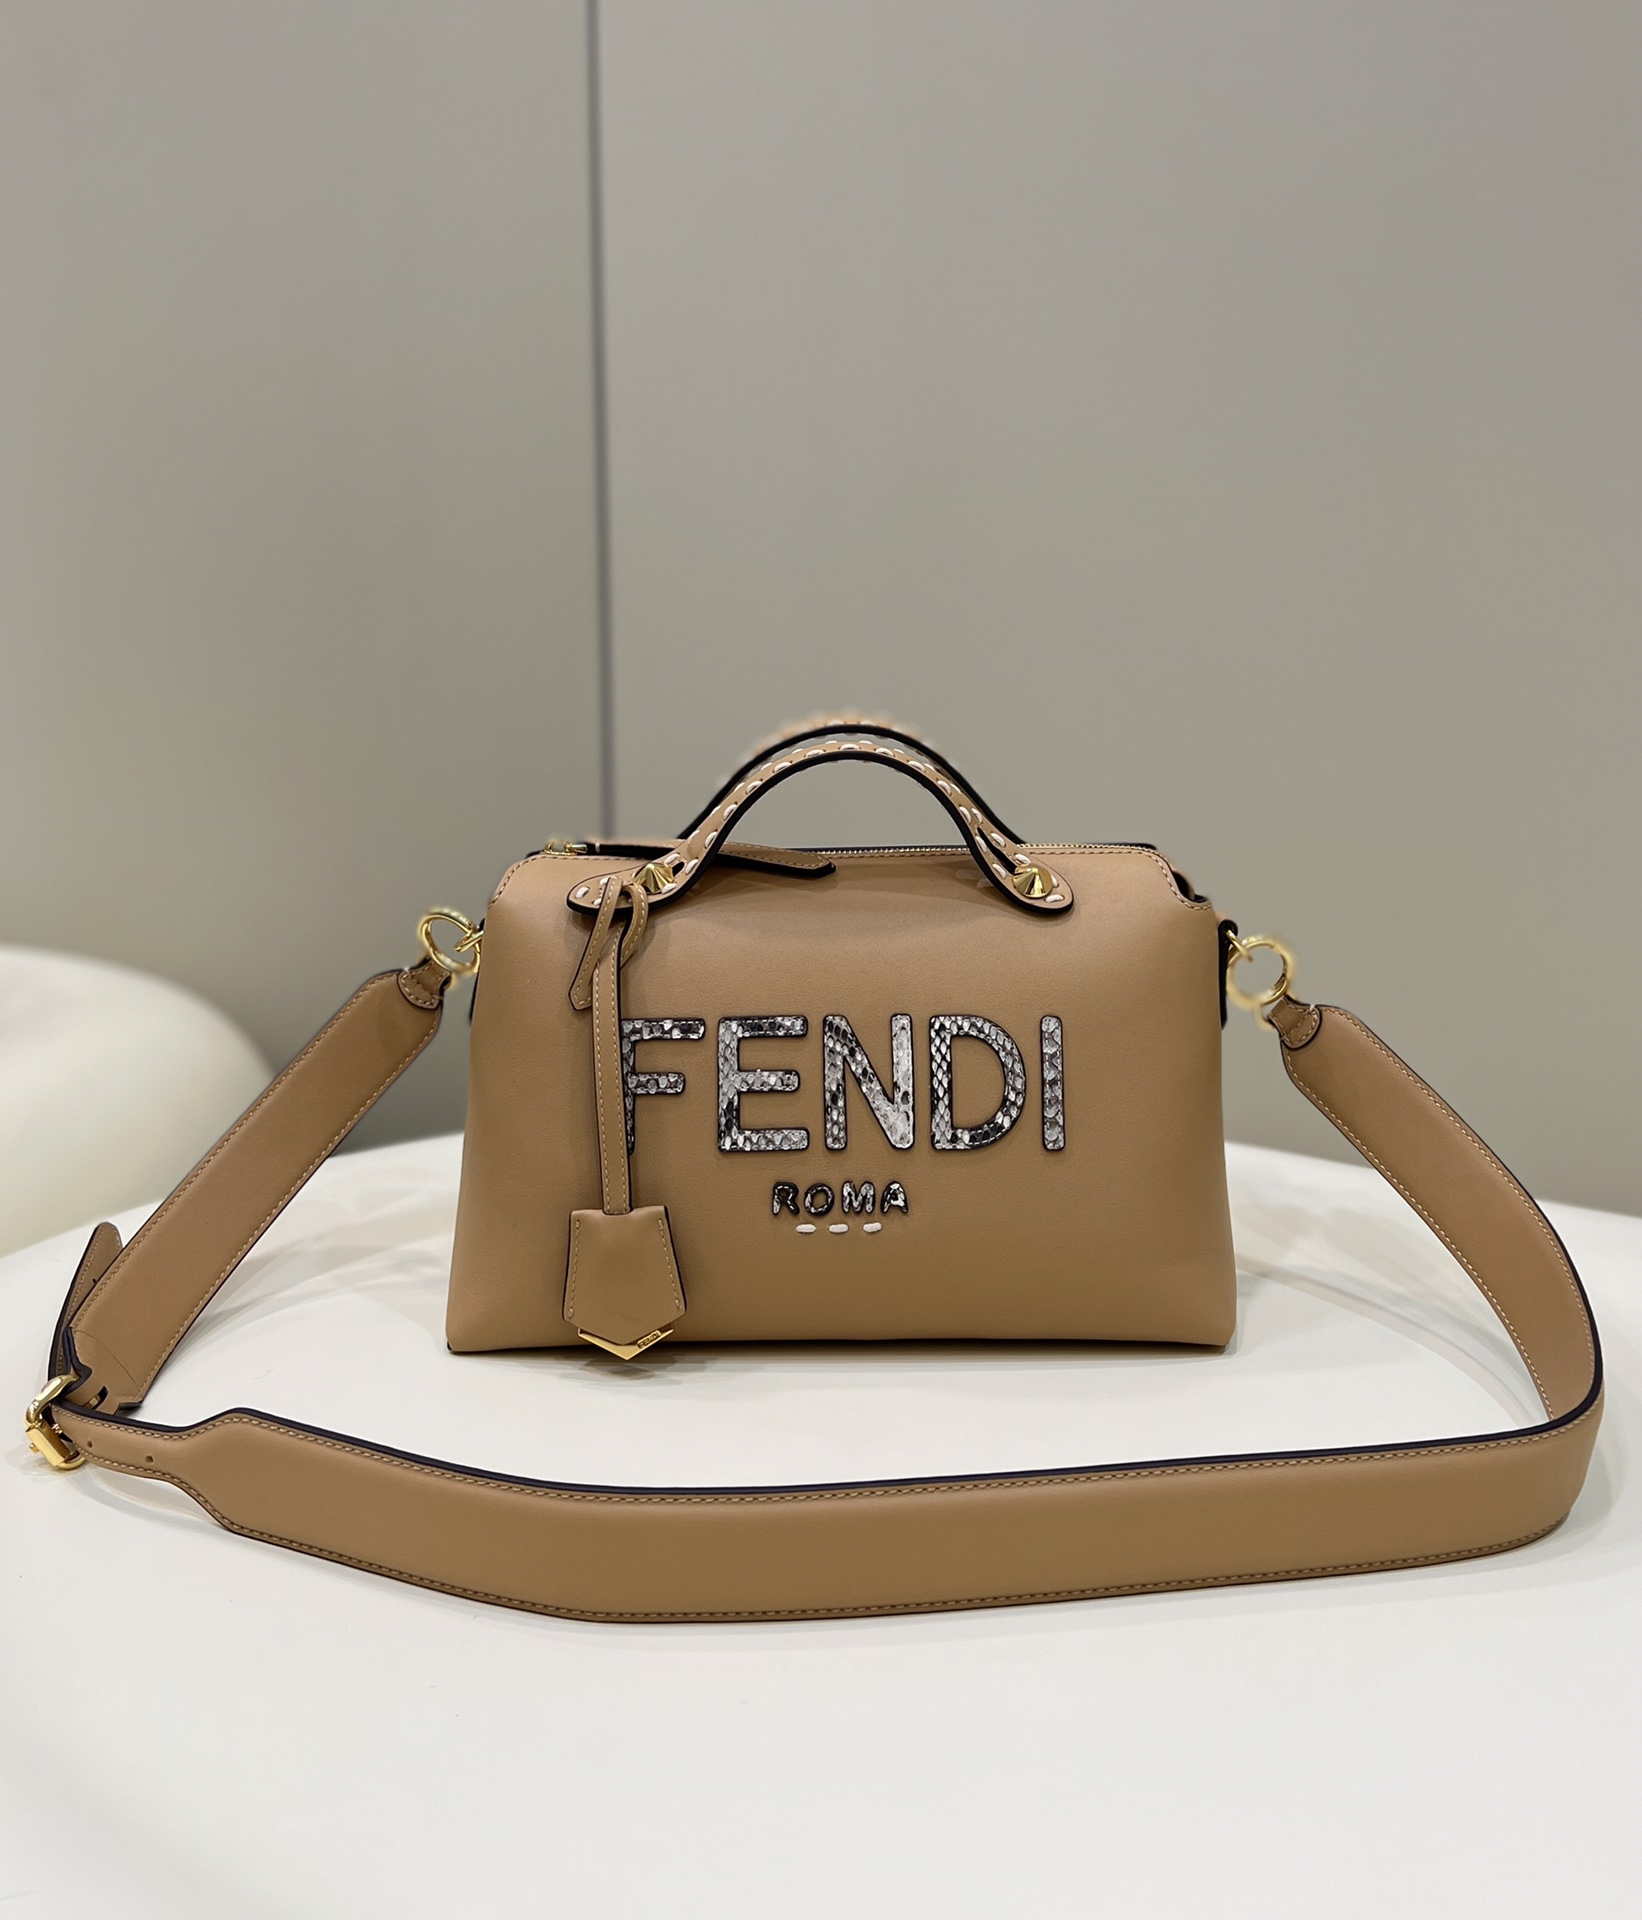 fendi-8bl146-by-the-way-medium-leather-boston-bag-064-luxibags.ru